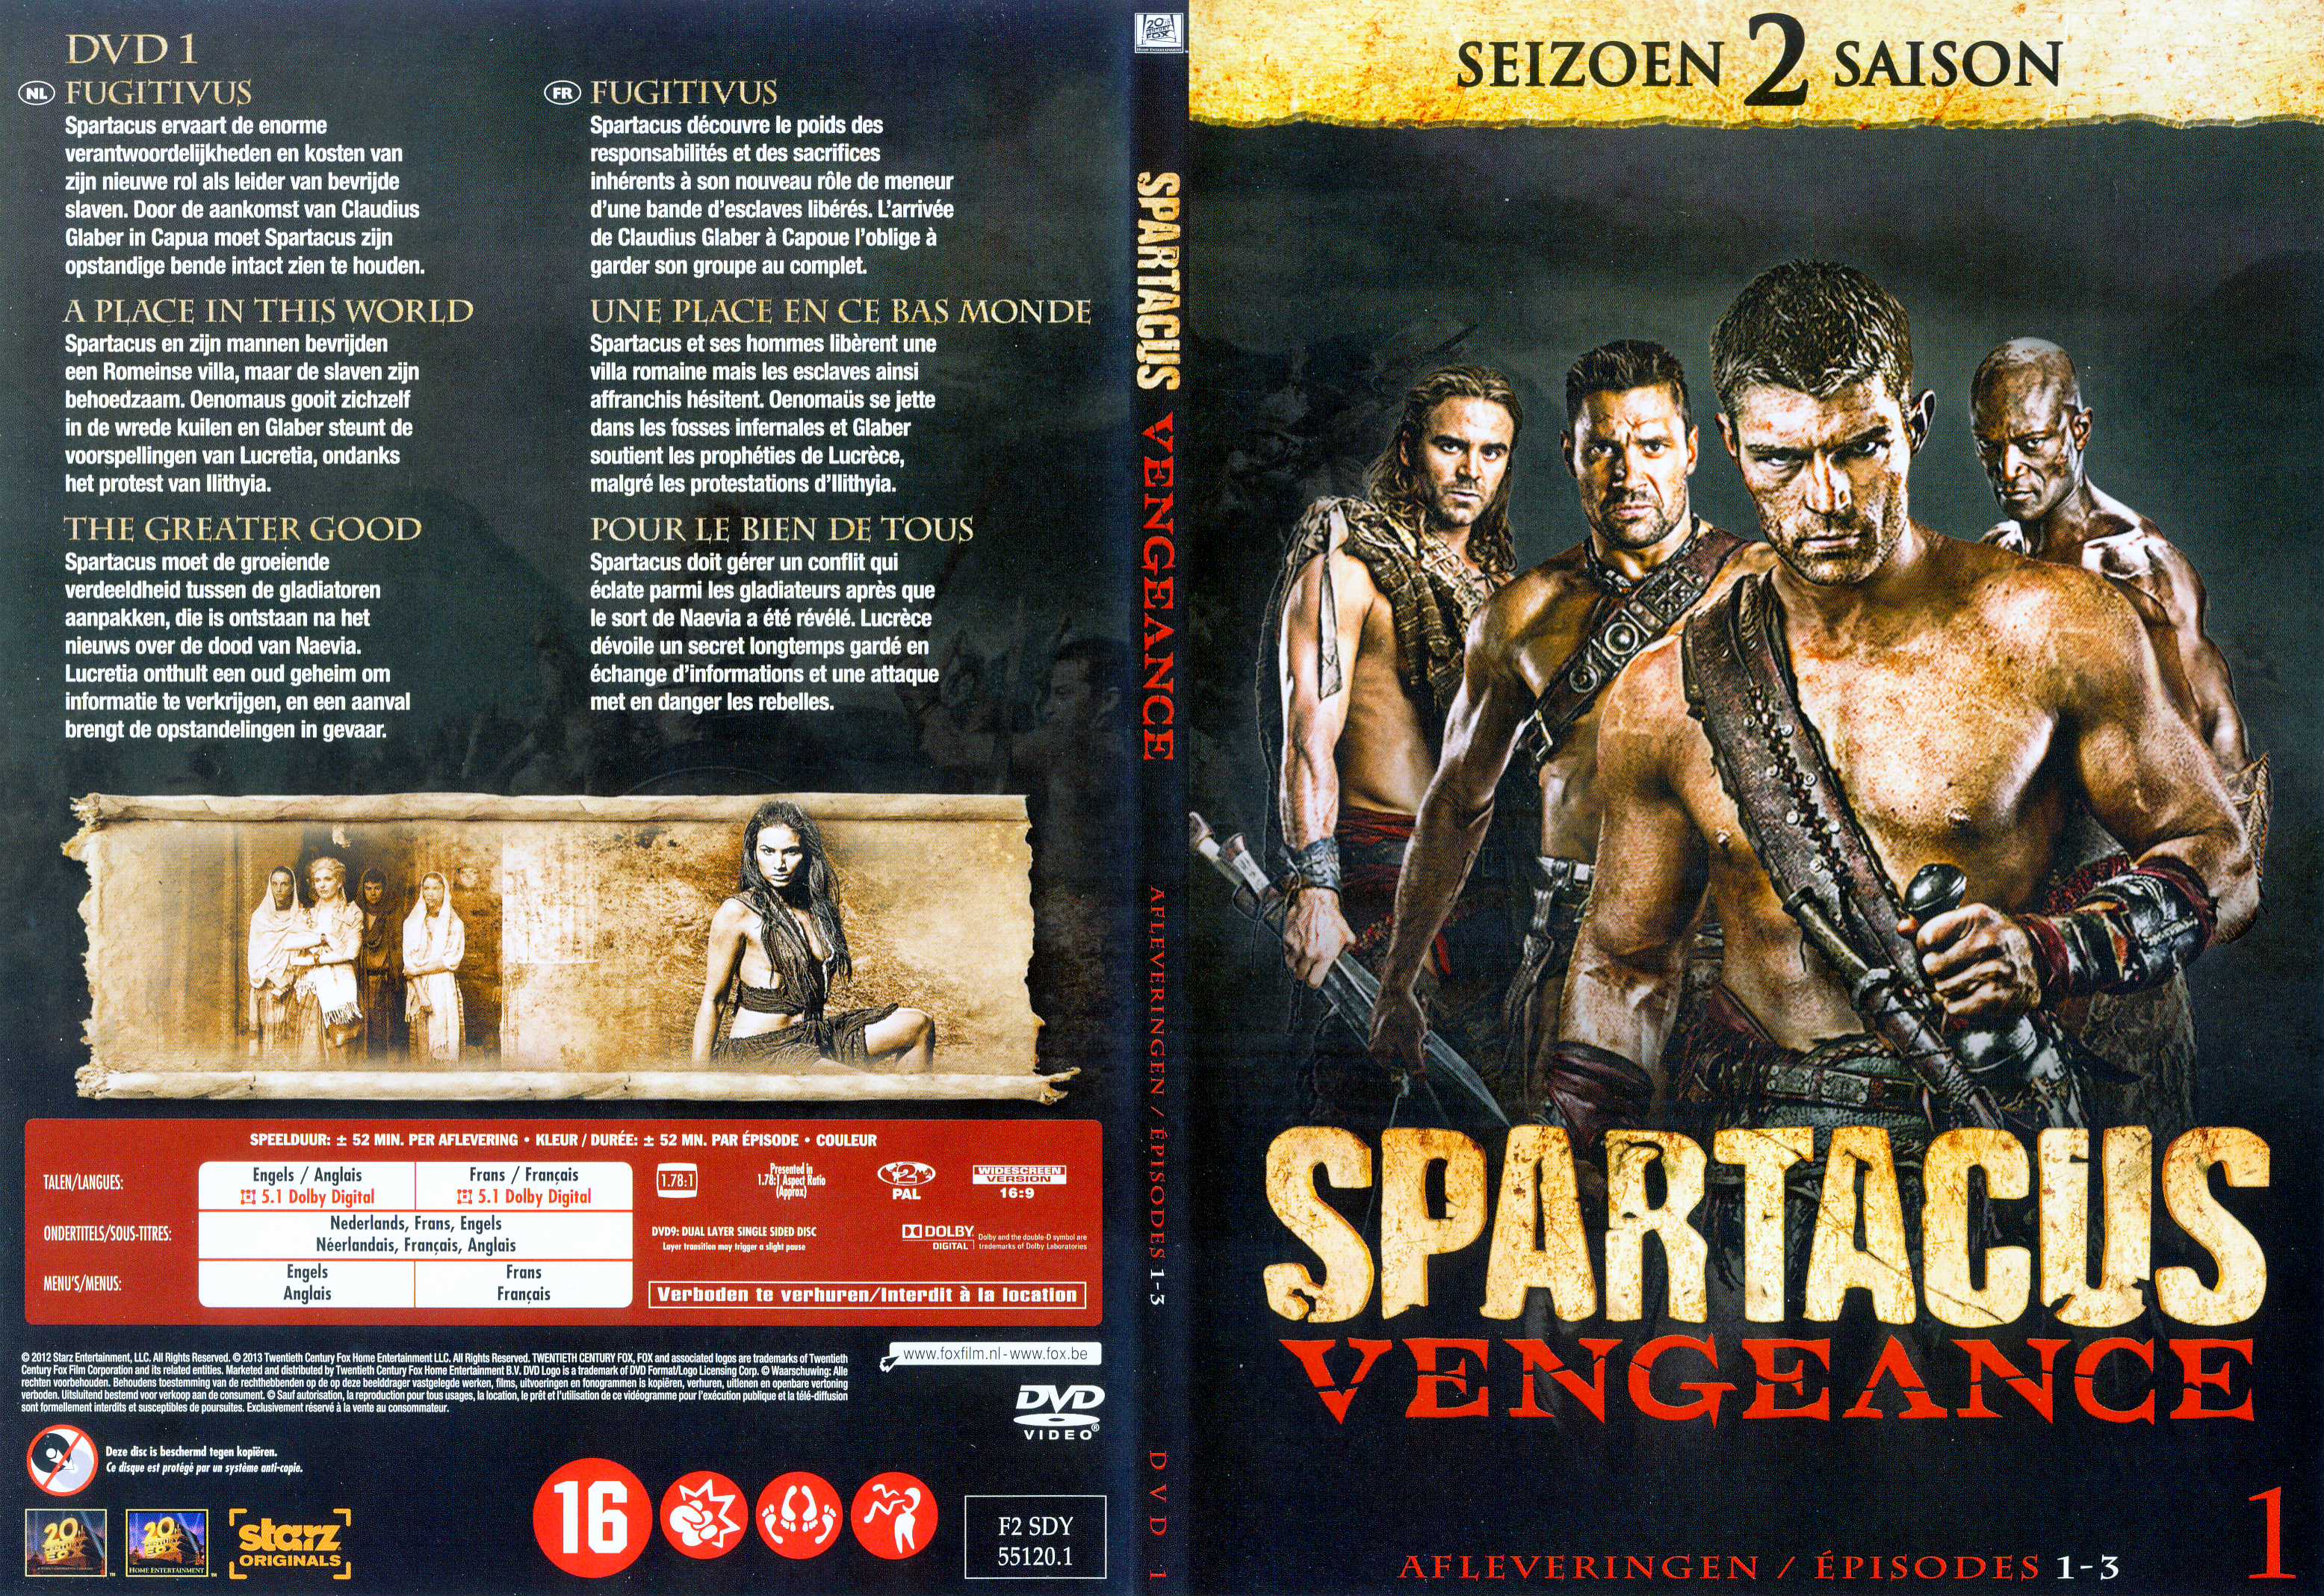 Jaquette DVD Spartacus vengeance Saison 2 DVD 1